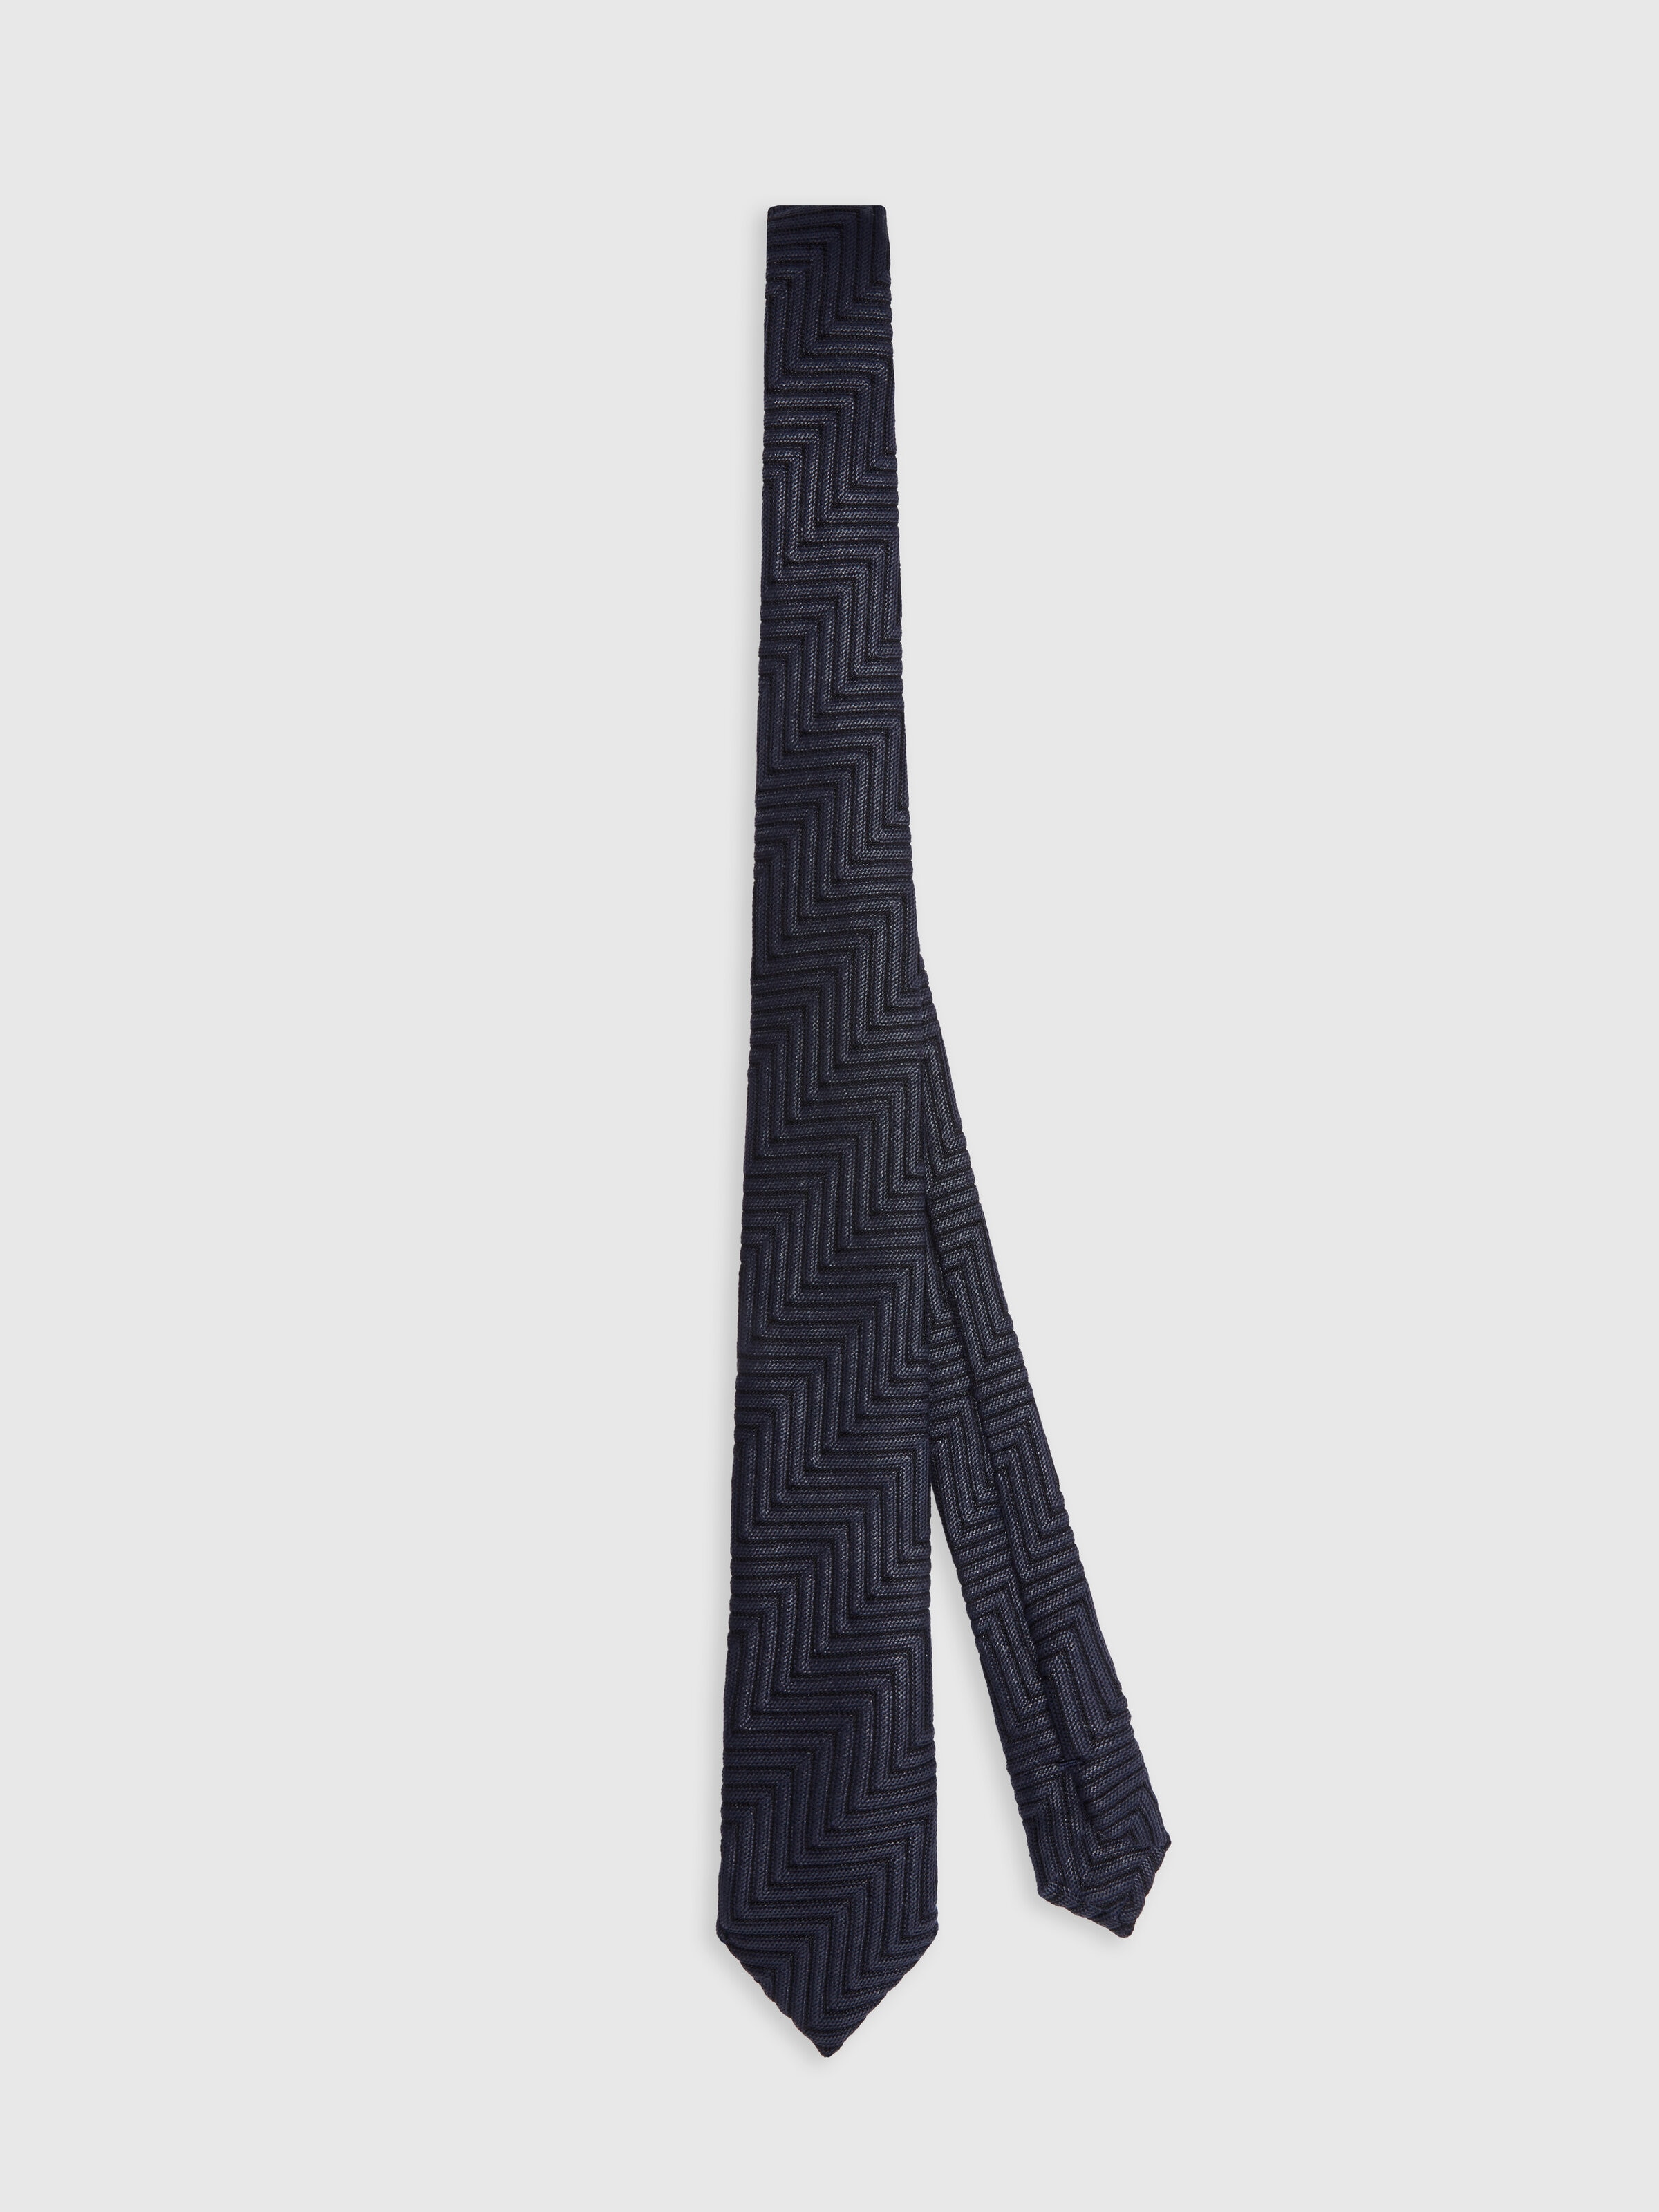 Cravatta in cotone e viscosa chevron, Multicolore  - 0